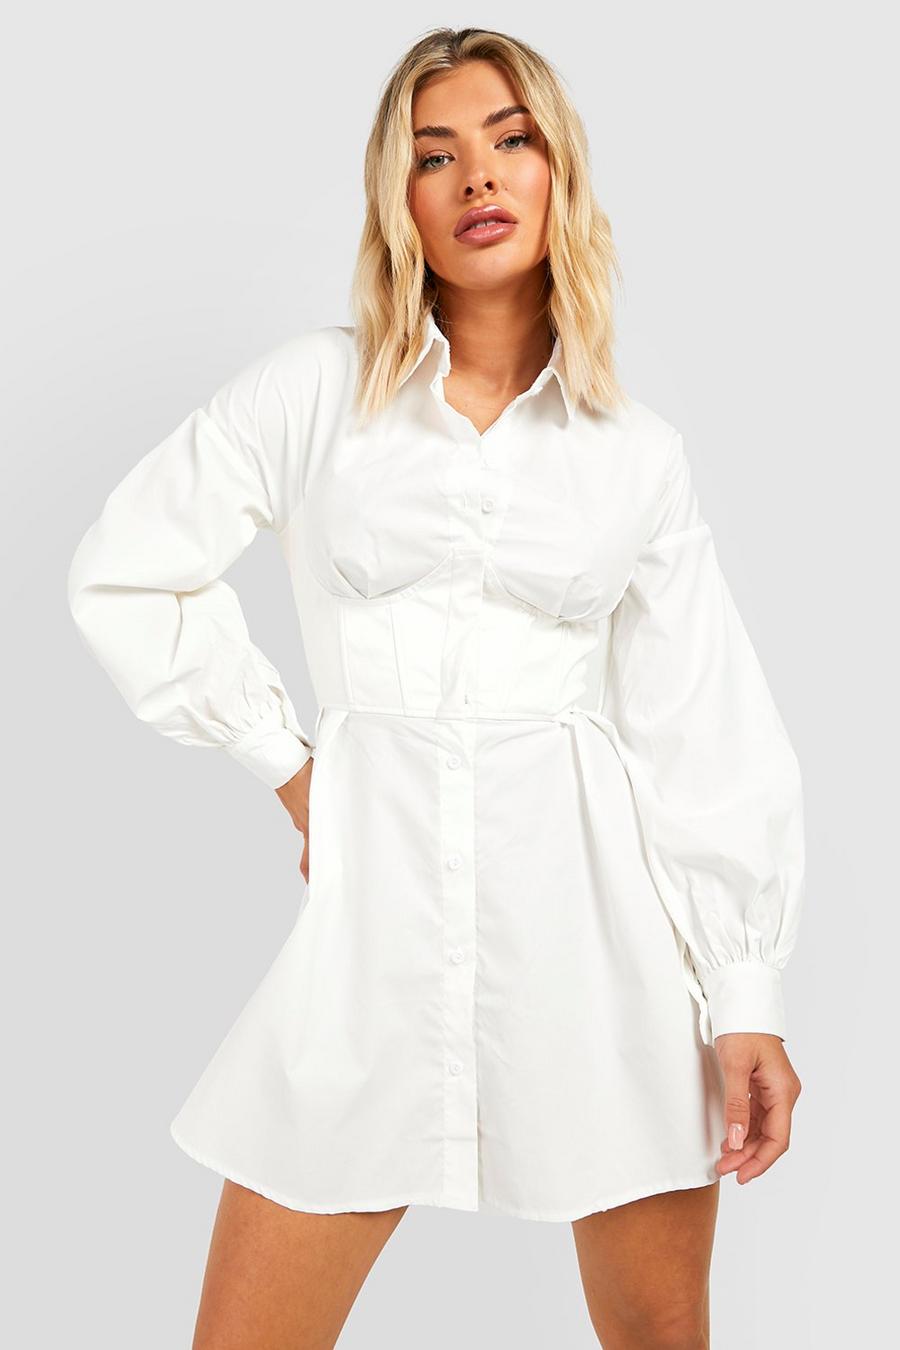 Vestito camicia con corsetto effetto pelle, Ivory bianco